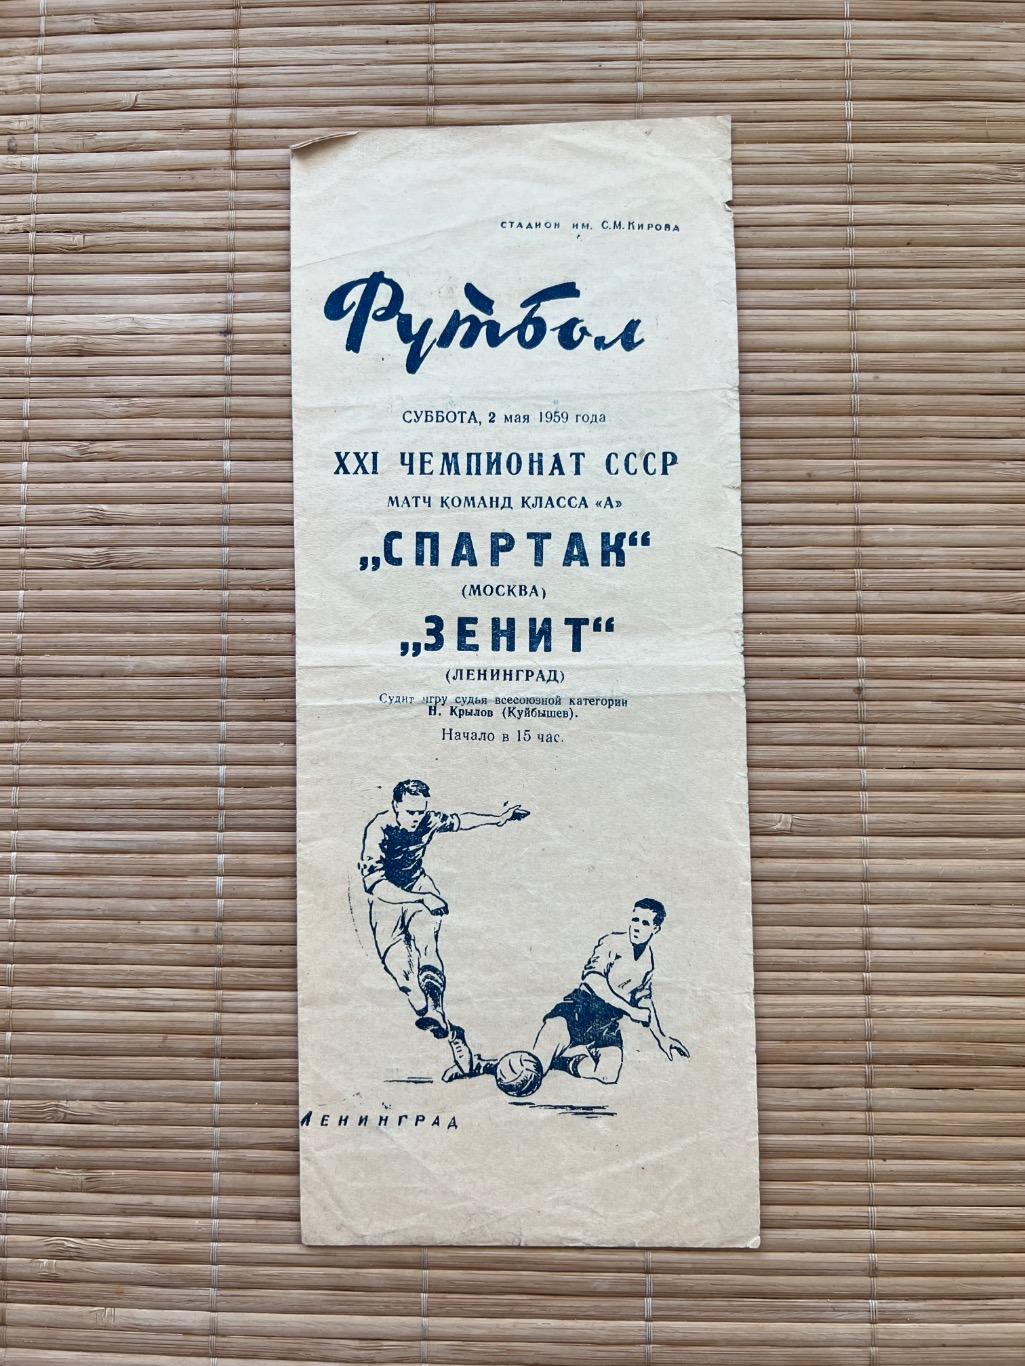 Зенит - Спартак Москва 2.05.1959